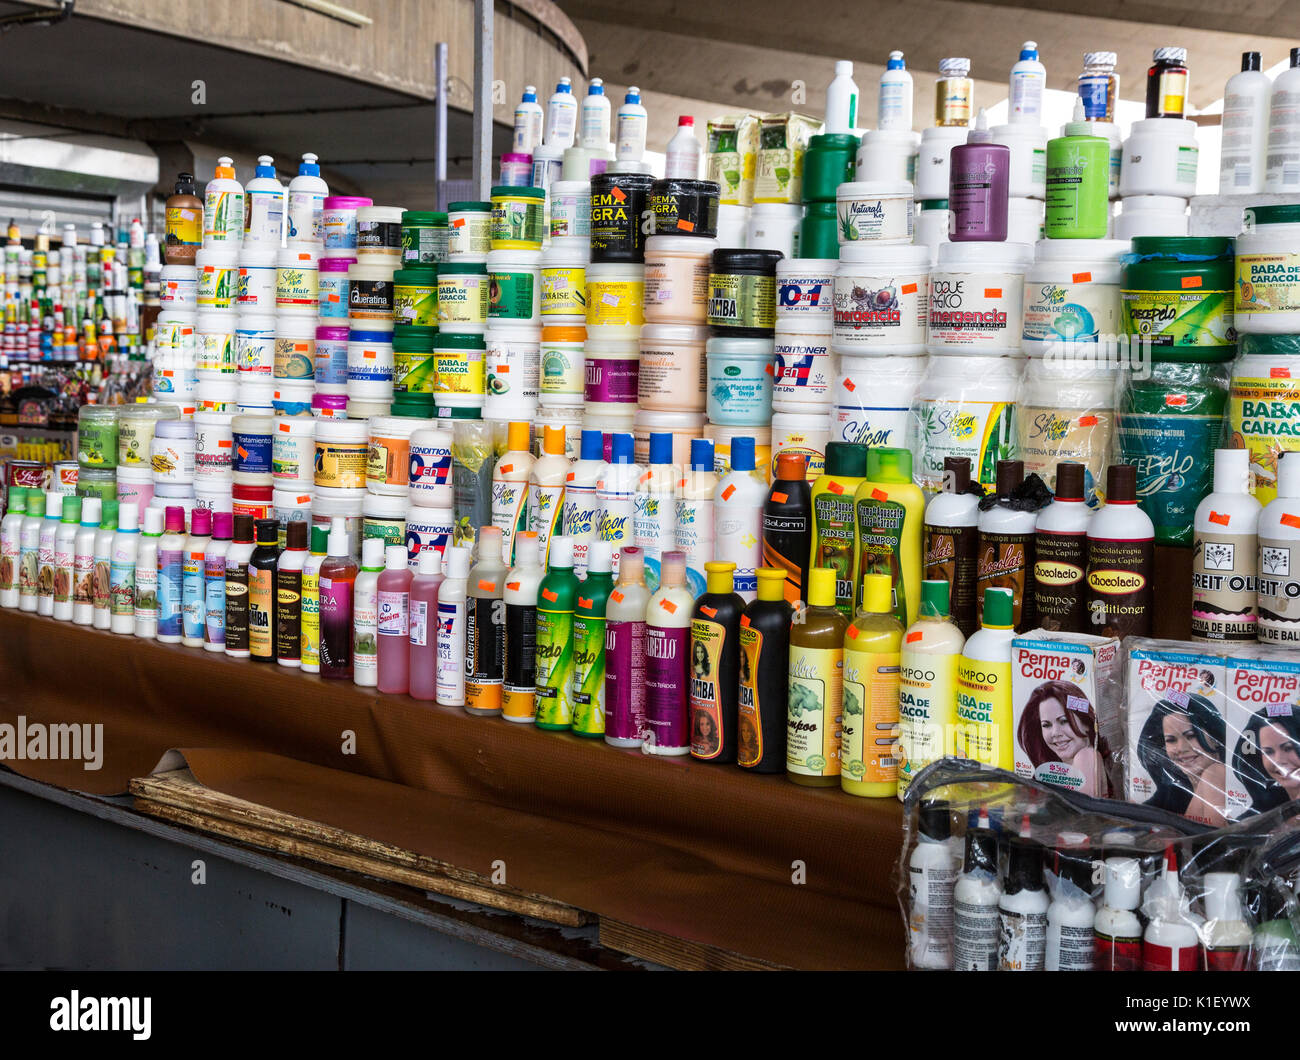 Willemstad, Curacao, Kleinen Antillen. Haar- und Hautpflegeprodukten, zentralen Markt. Stockfoto